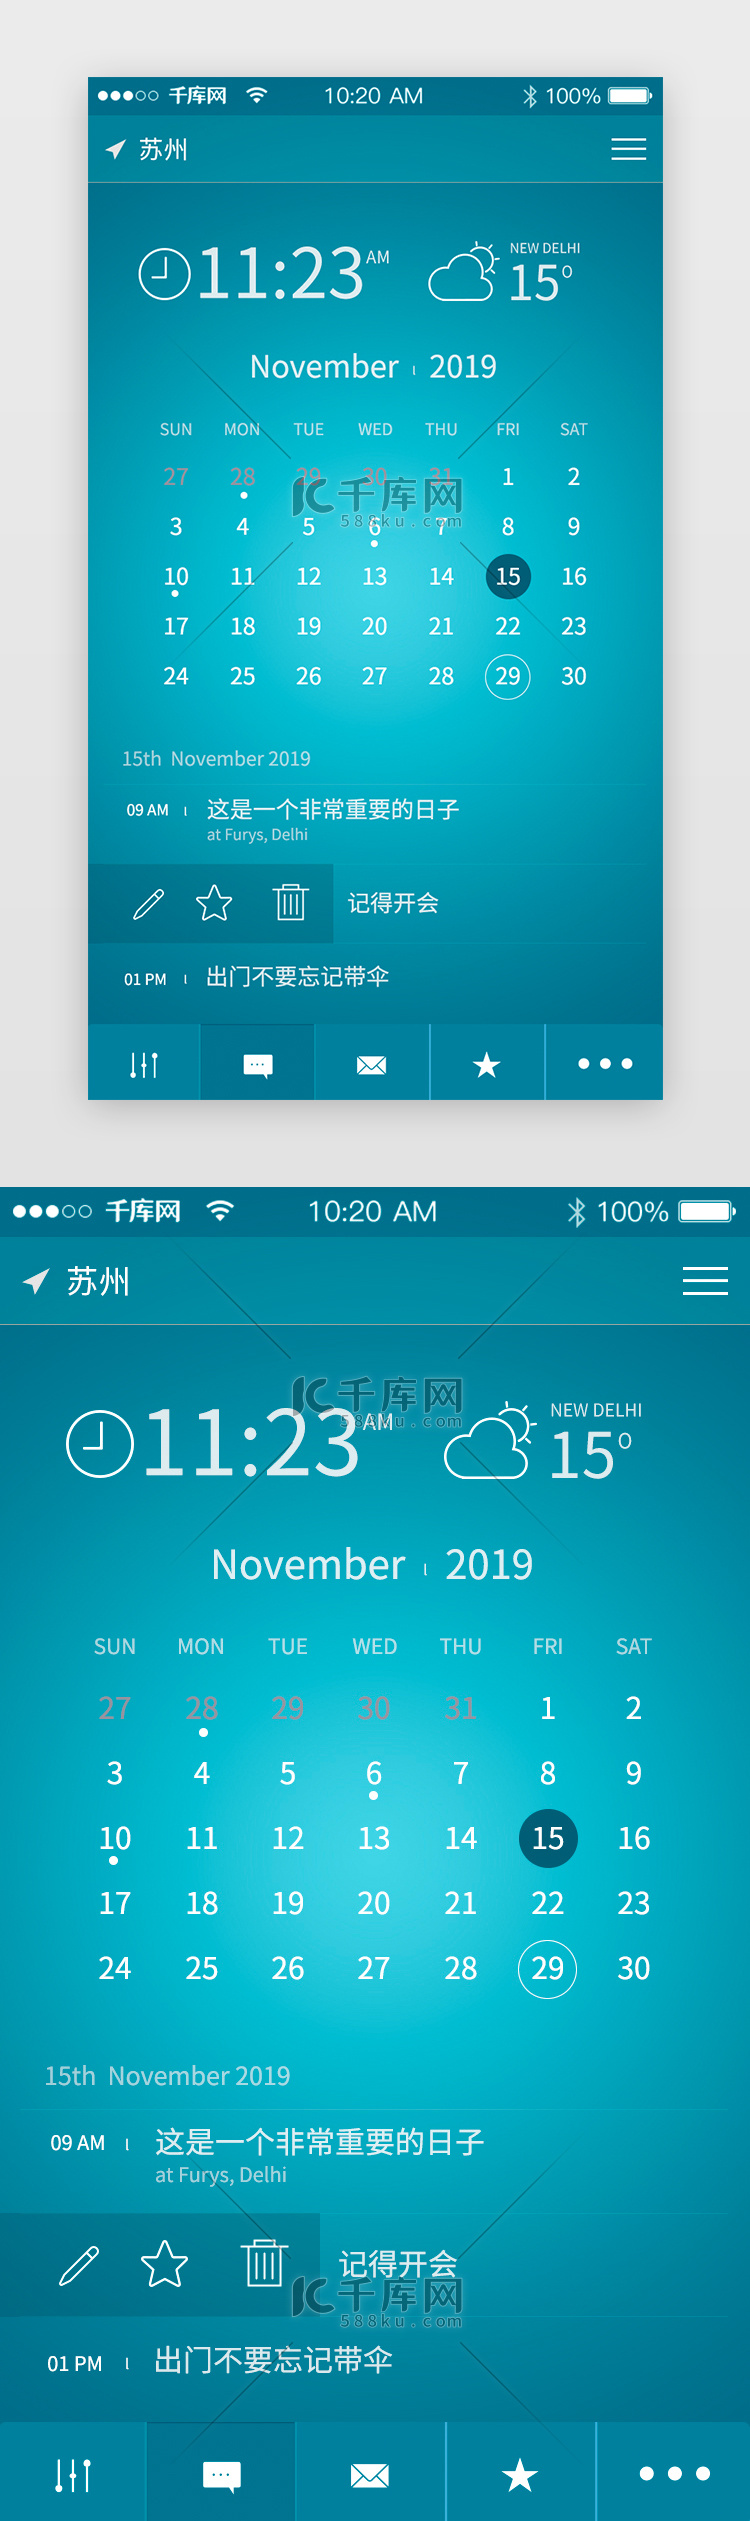 蓝色简约扁平化风格天气app界面设计